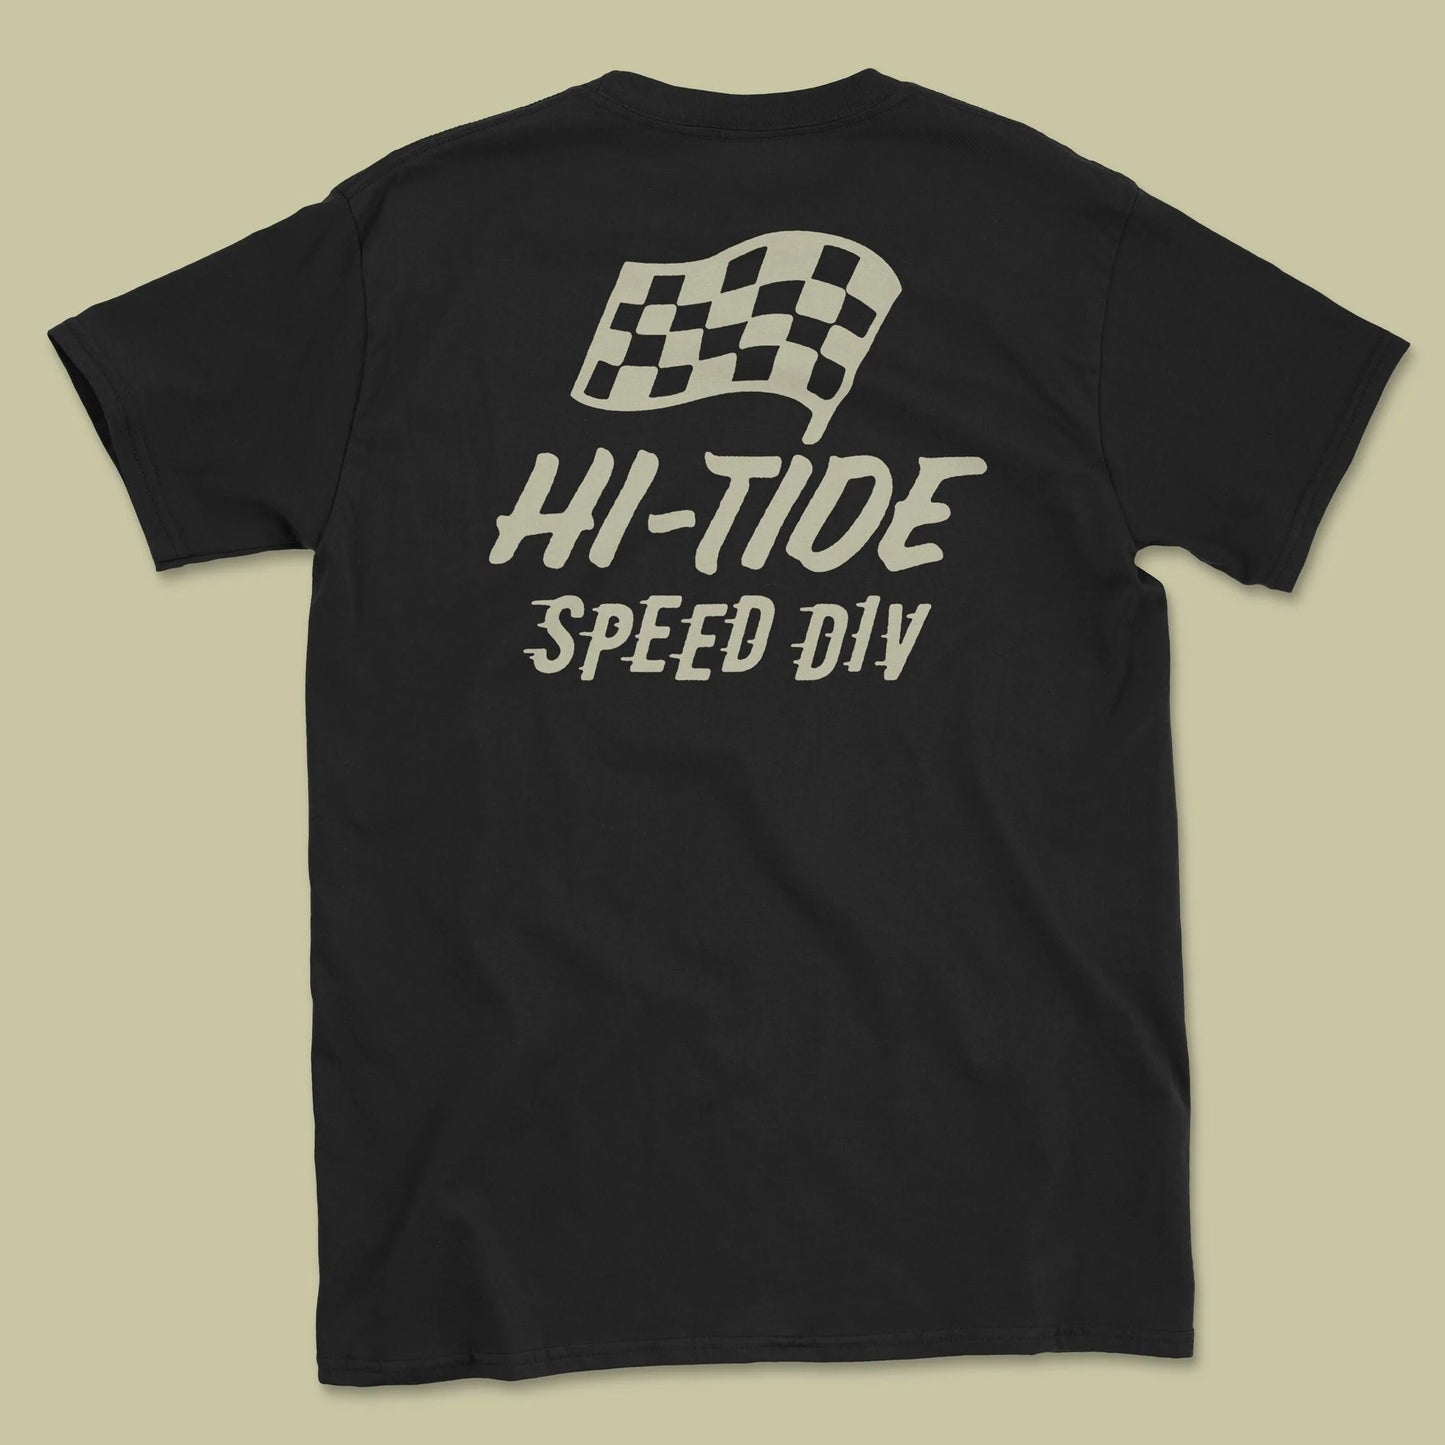 Hi-Tide Speed Division T